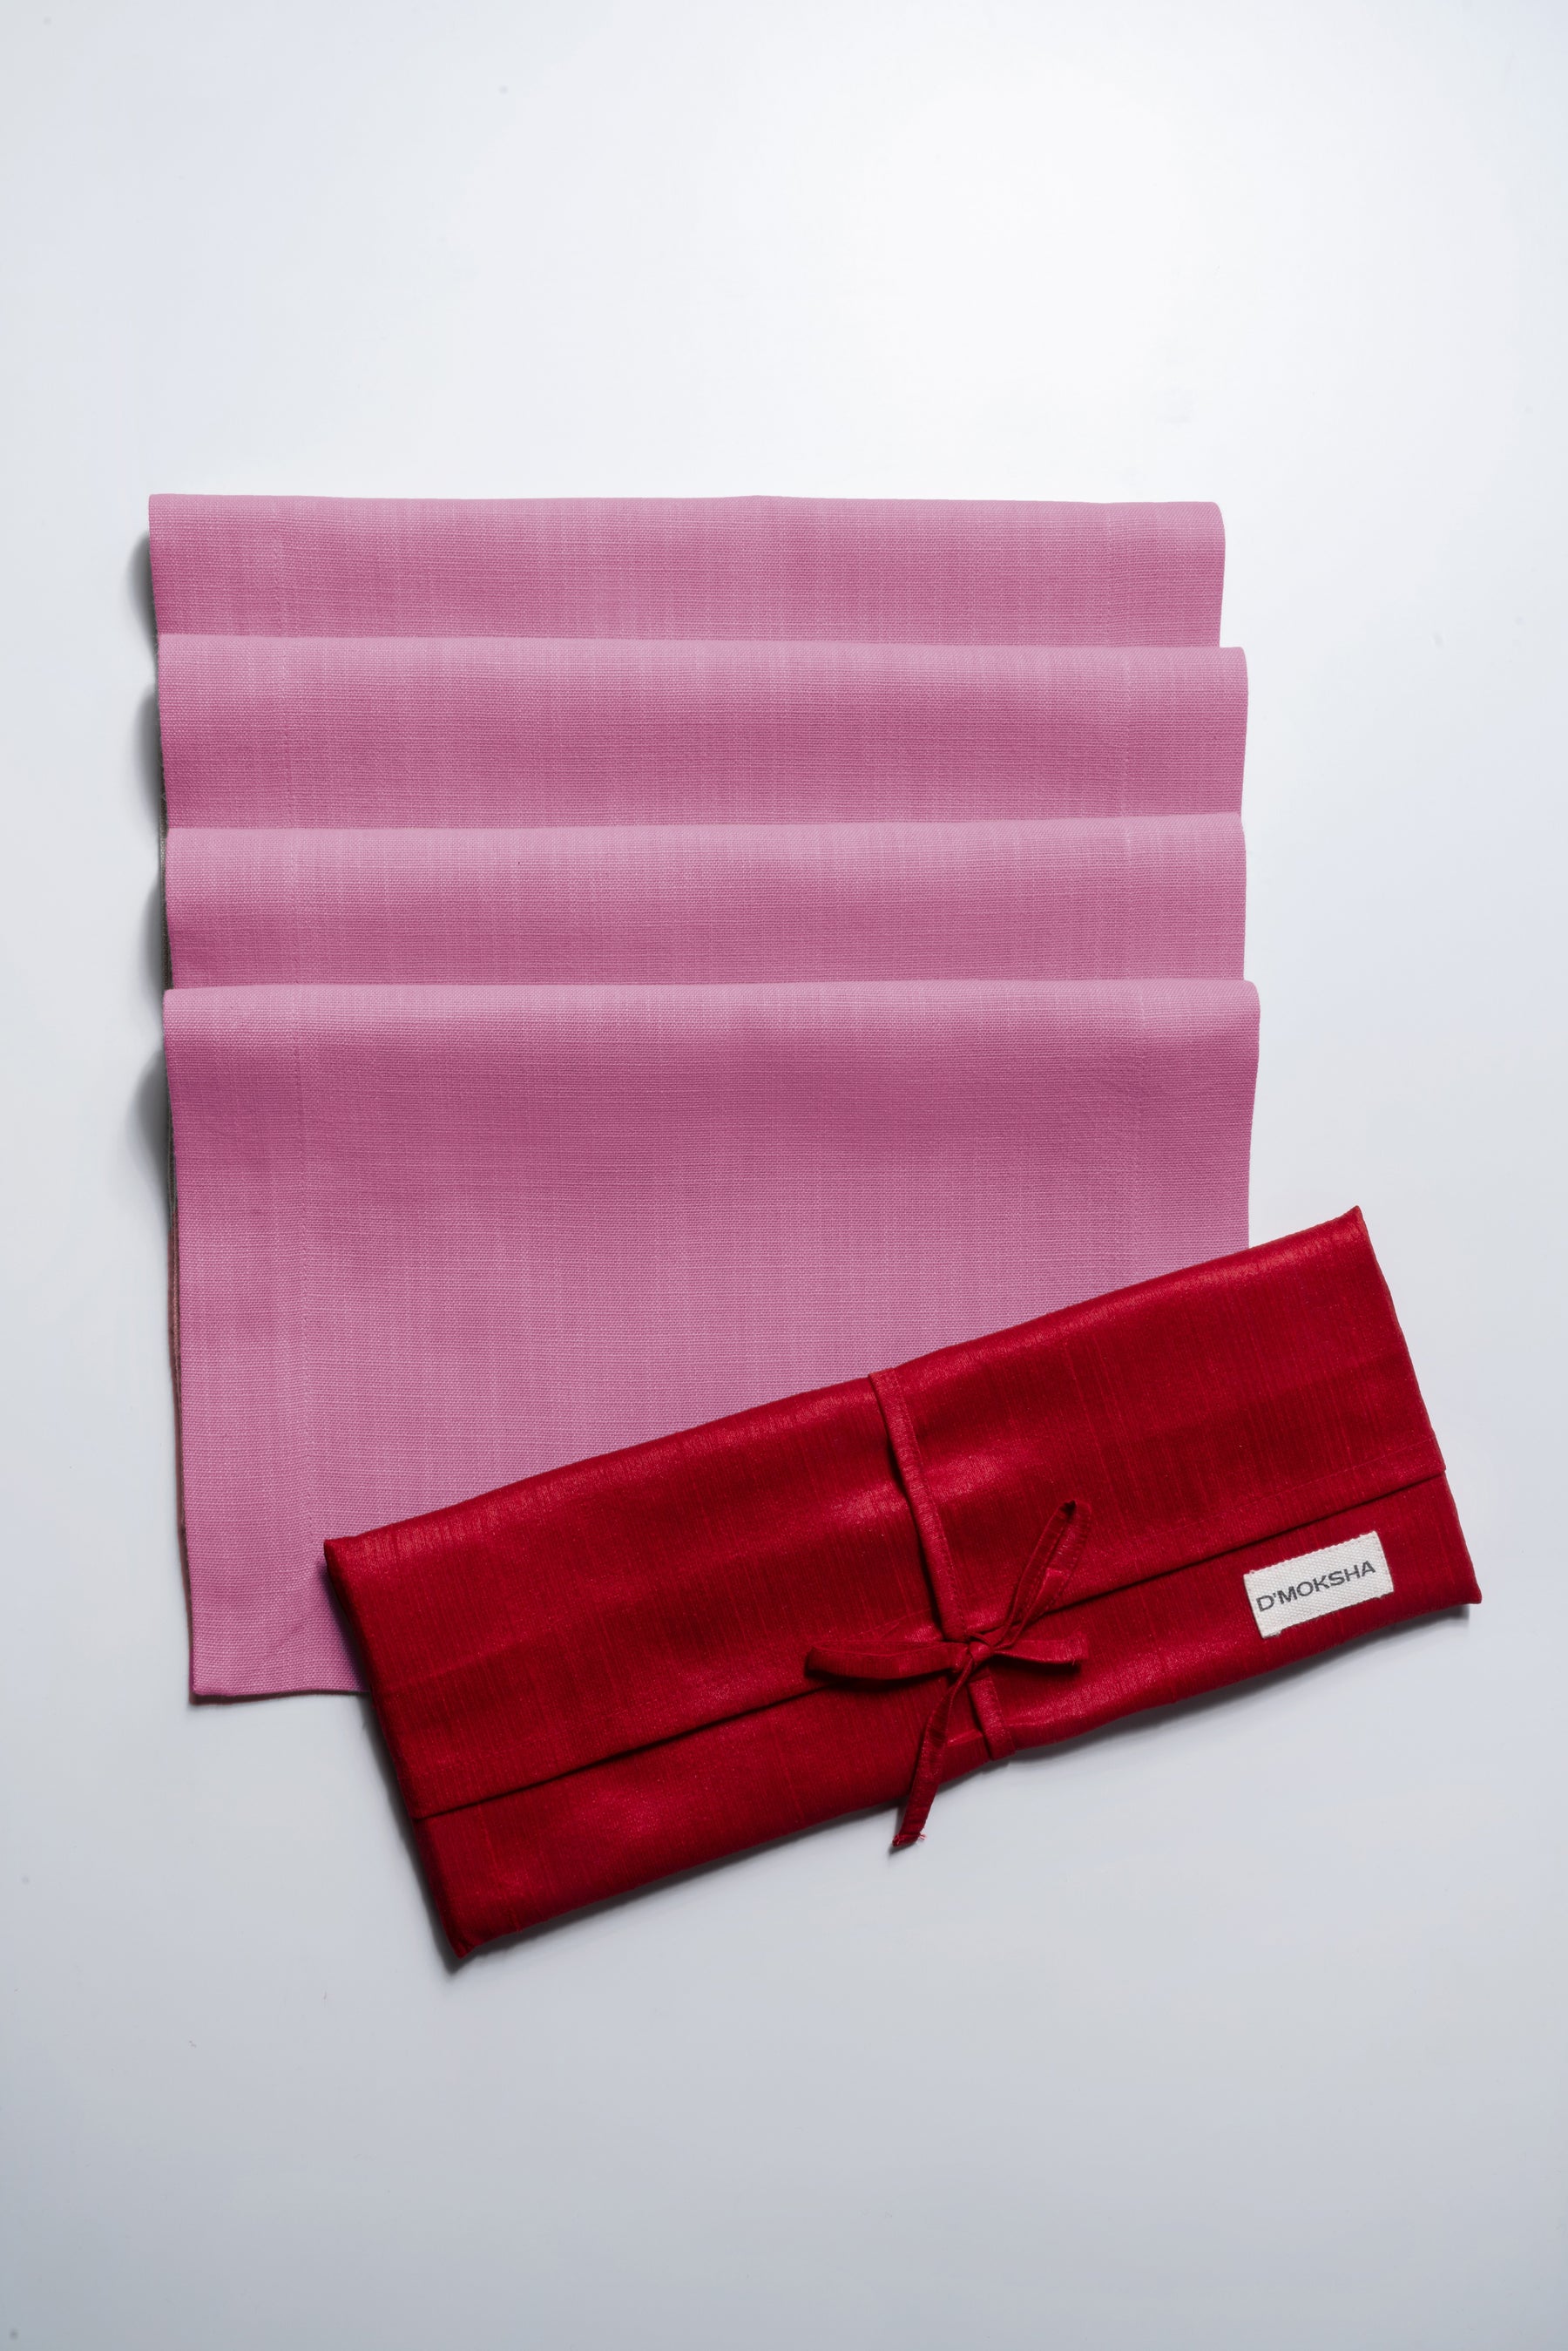 Bubblegum Pink Linen Textured Placemats 14 x 19 Inch Set of 4 - Mitered Corner